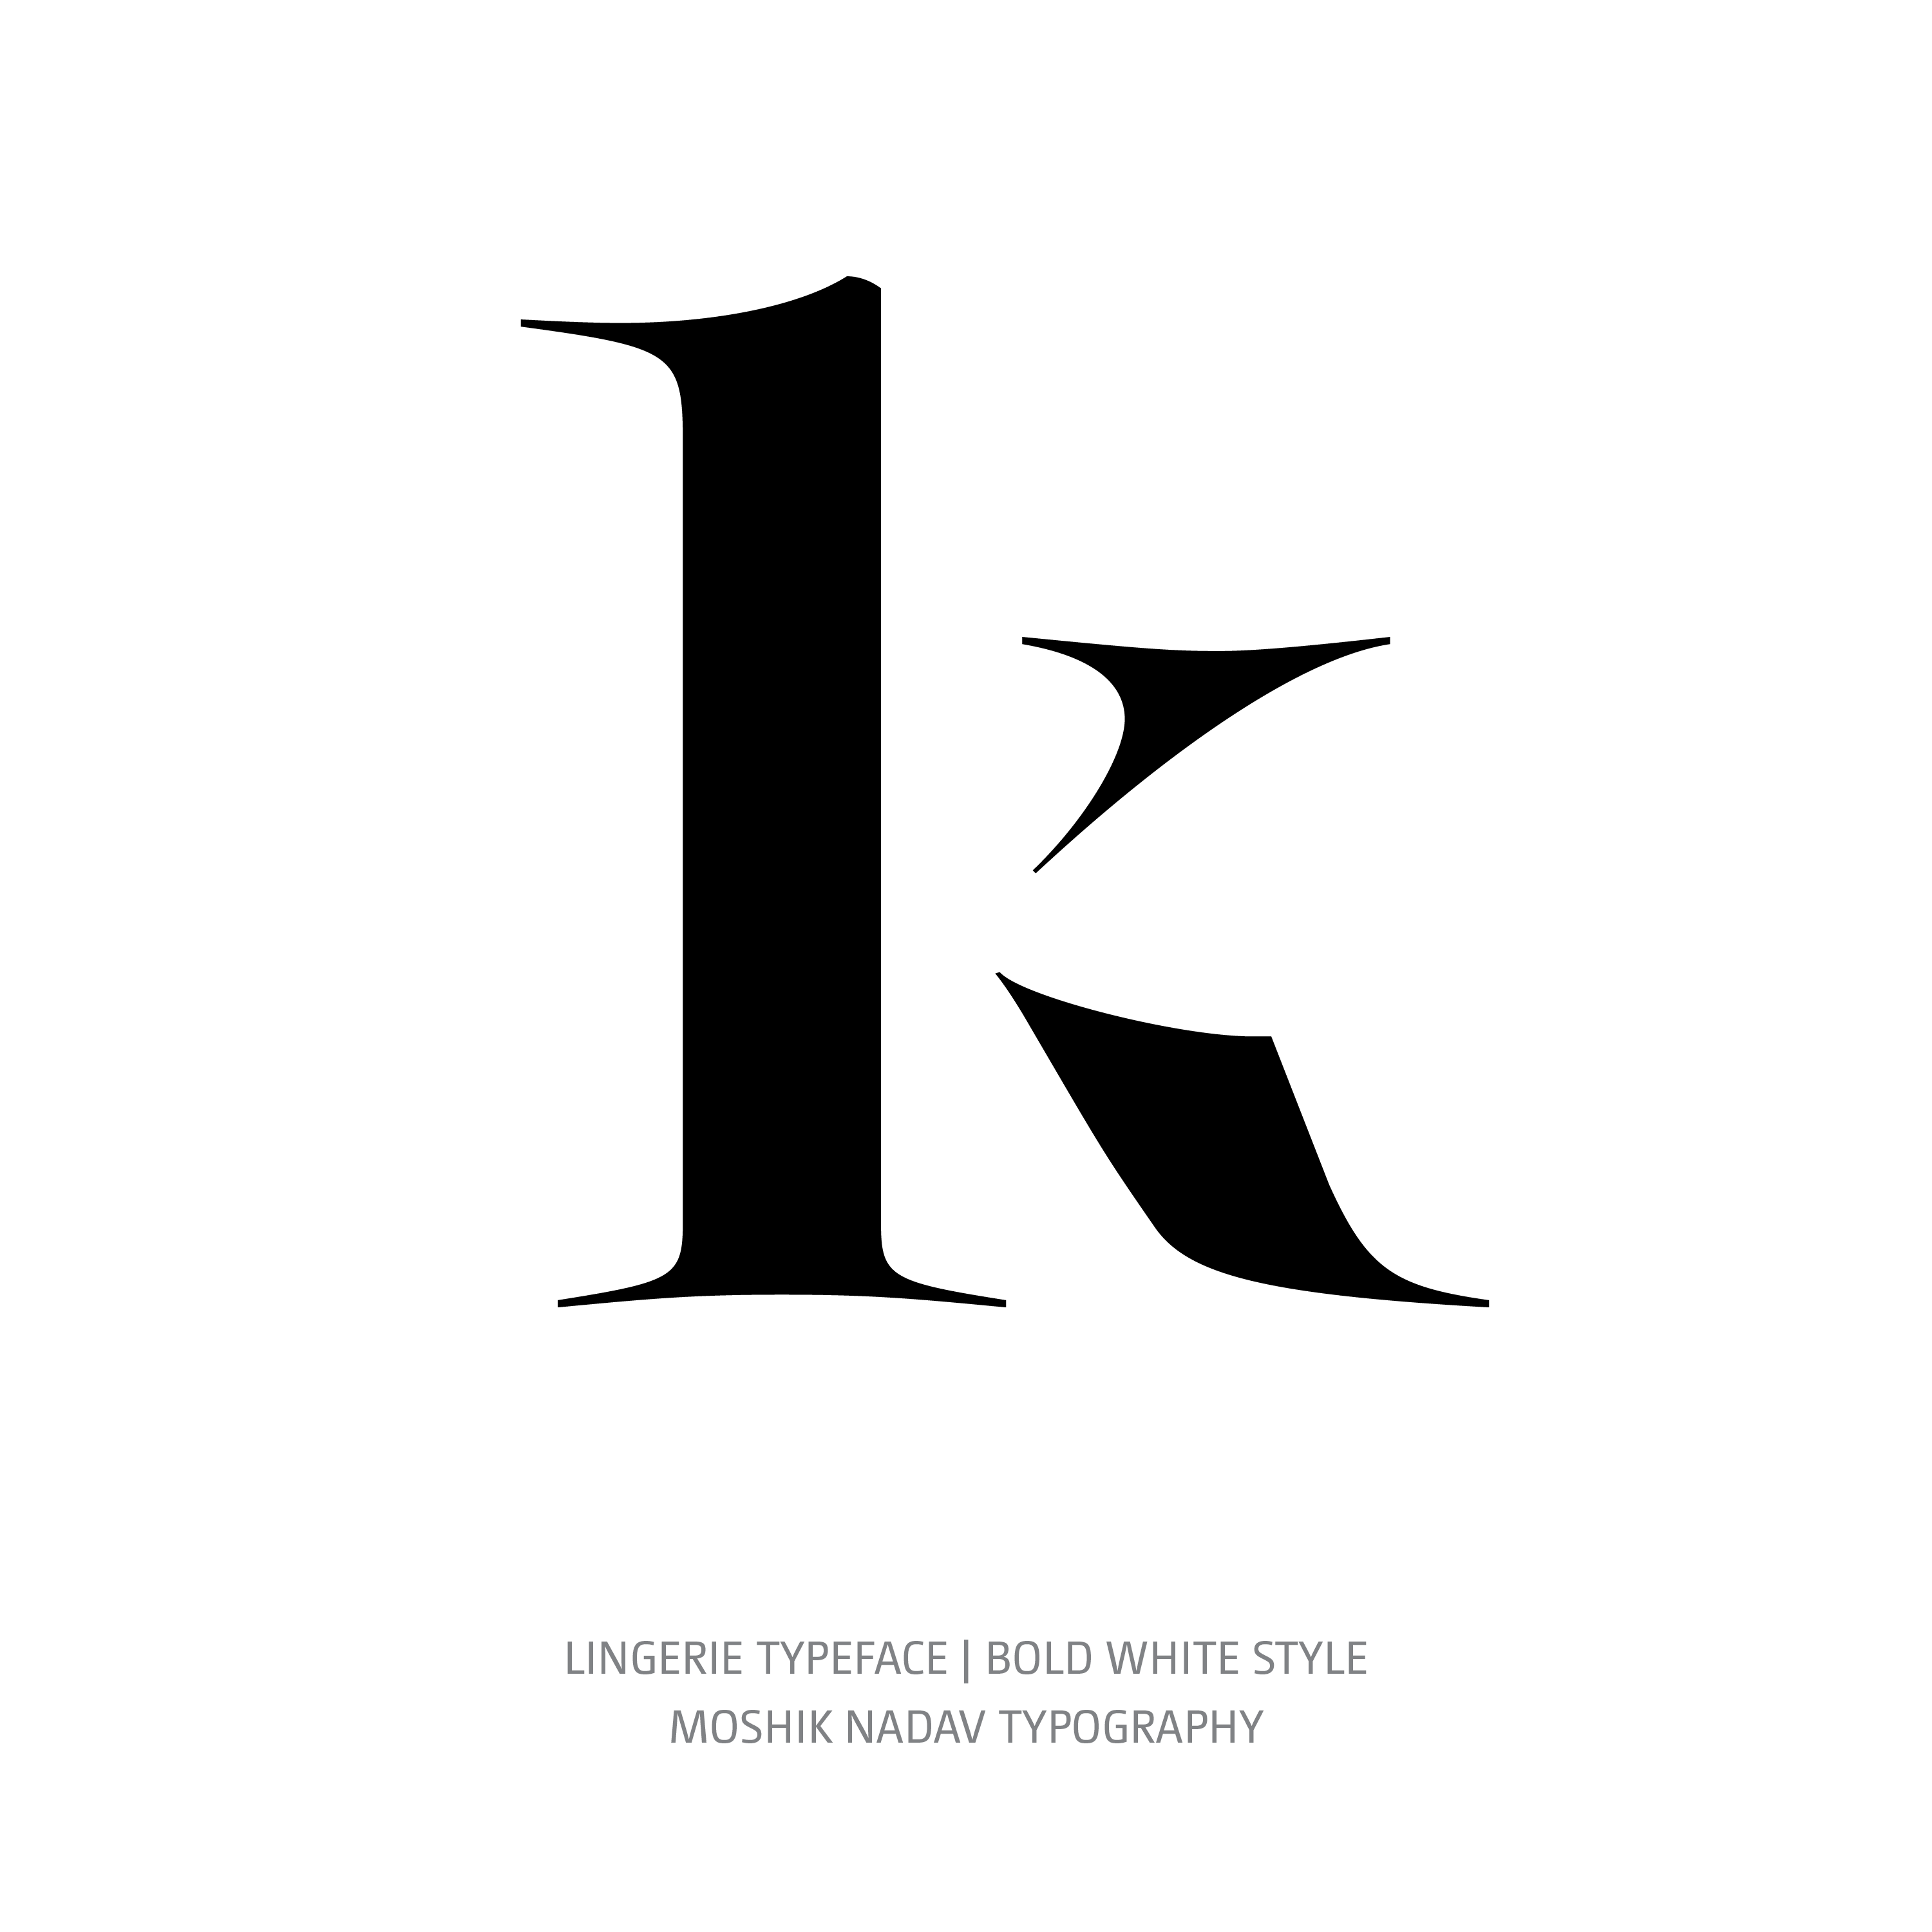 Lingerie Typeface Bold White k